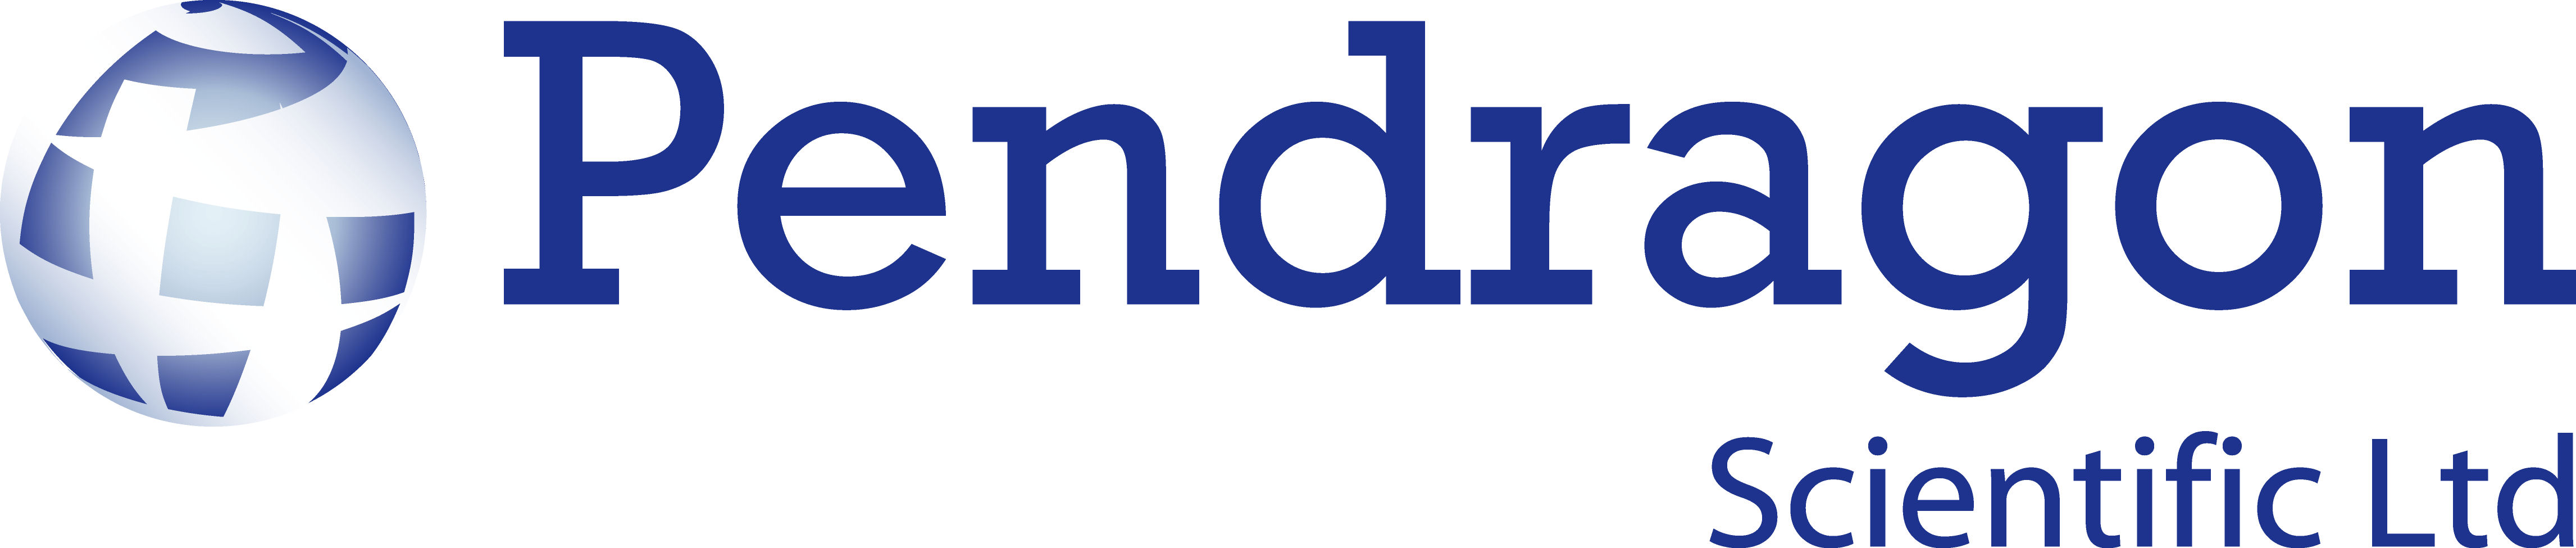 logo for Pendragon Scientific Ltd